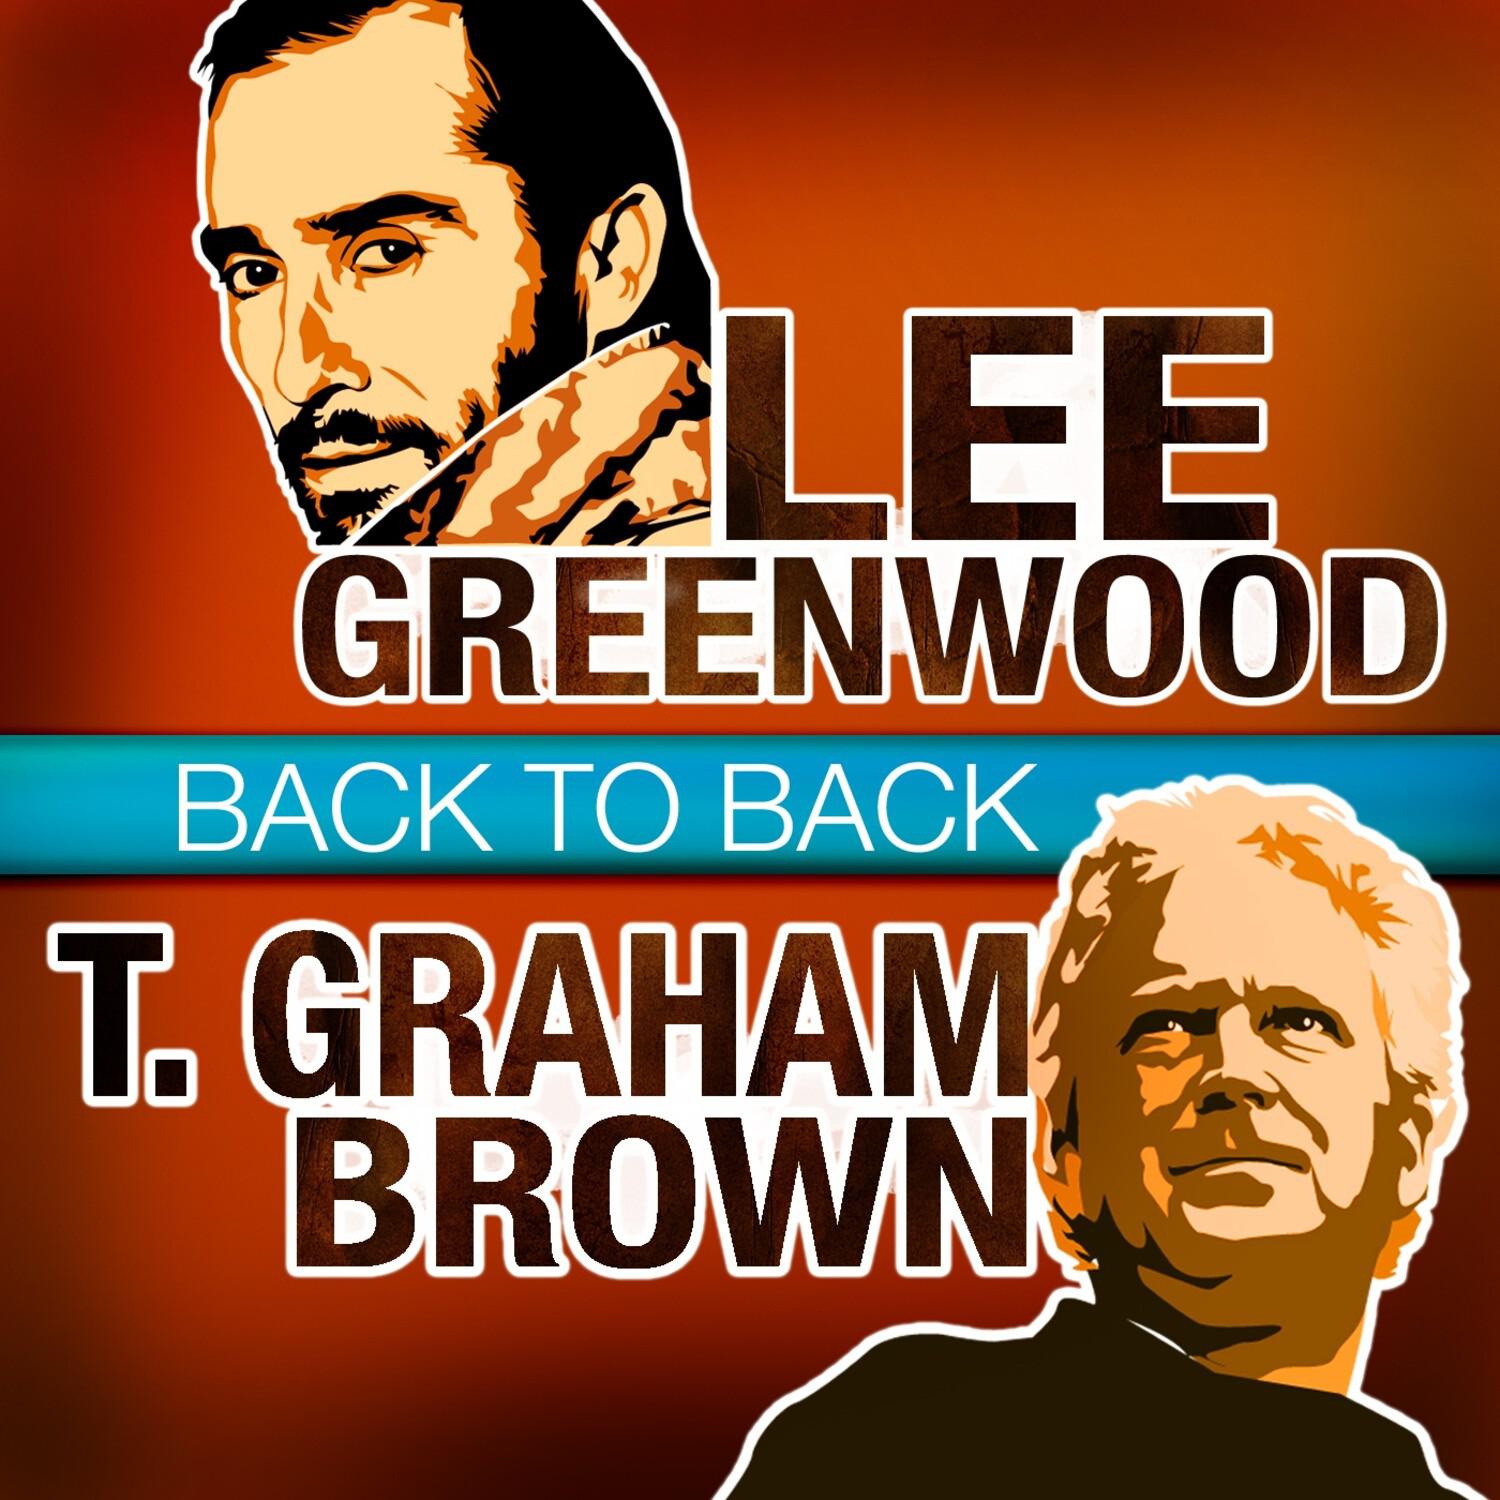 Back to Back - Lee Greenwood & T. Graham Brown